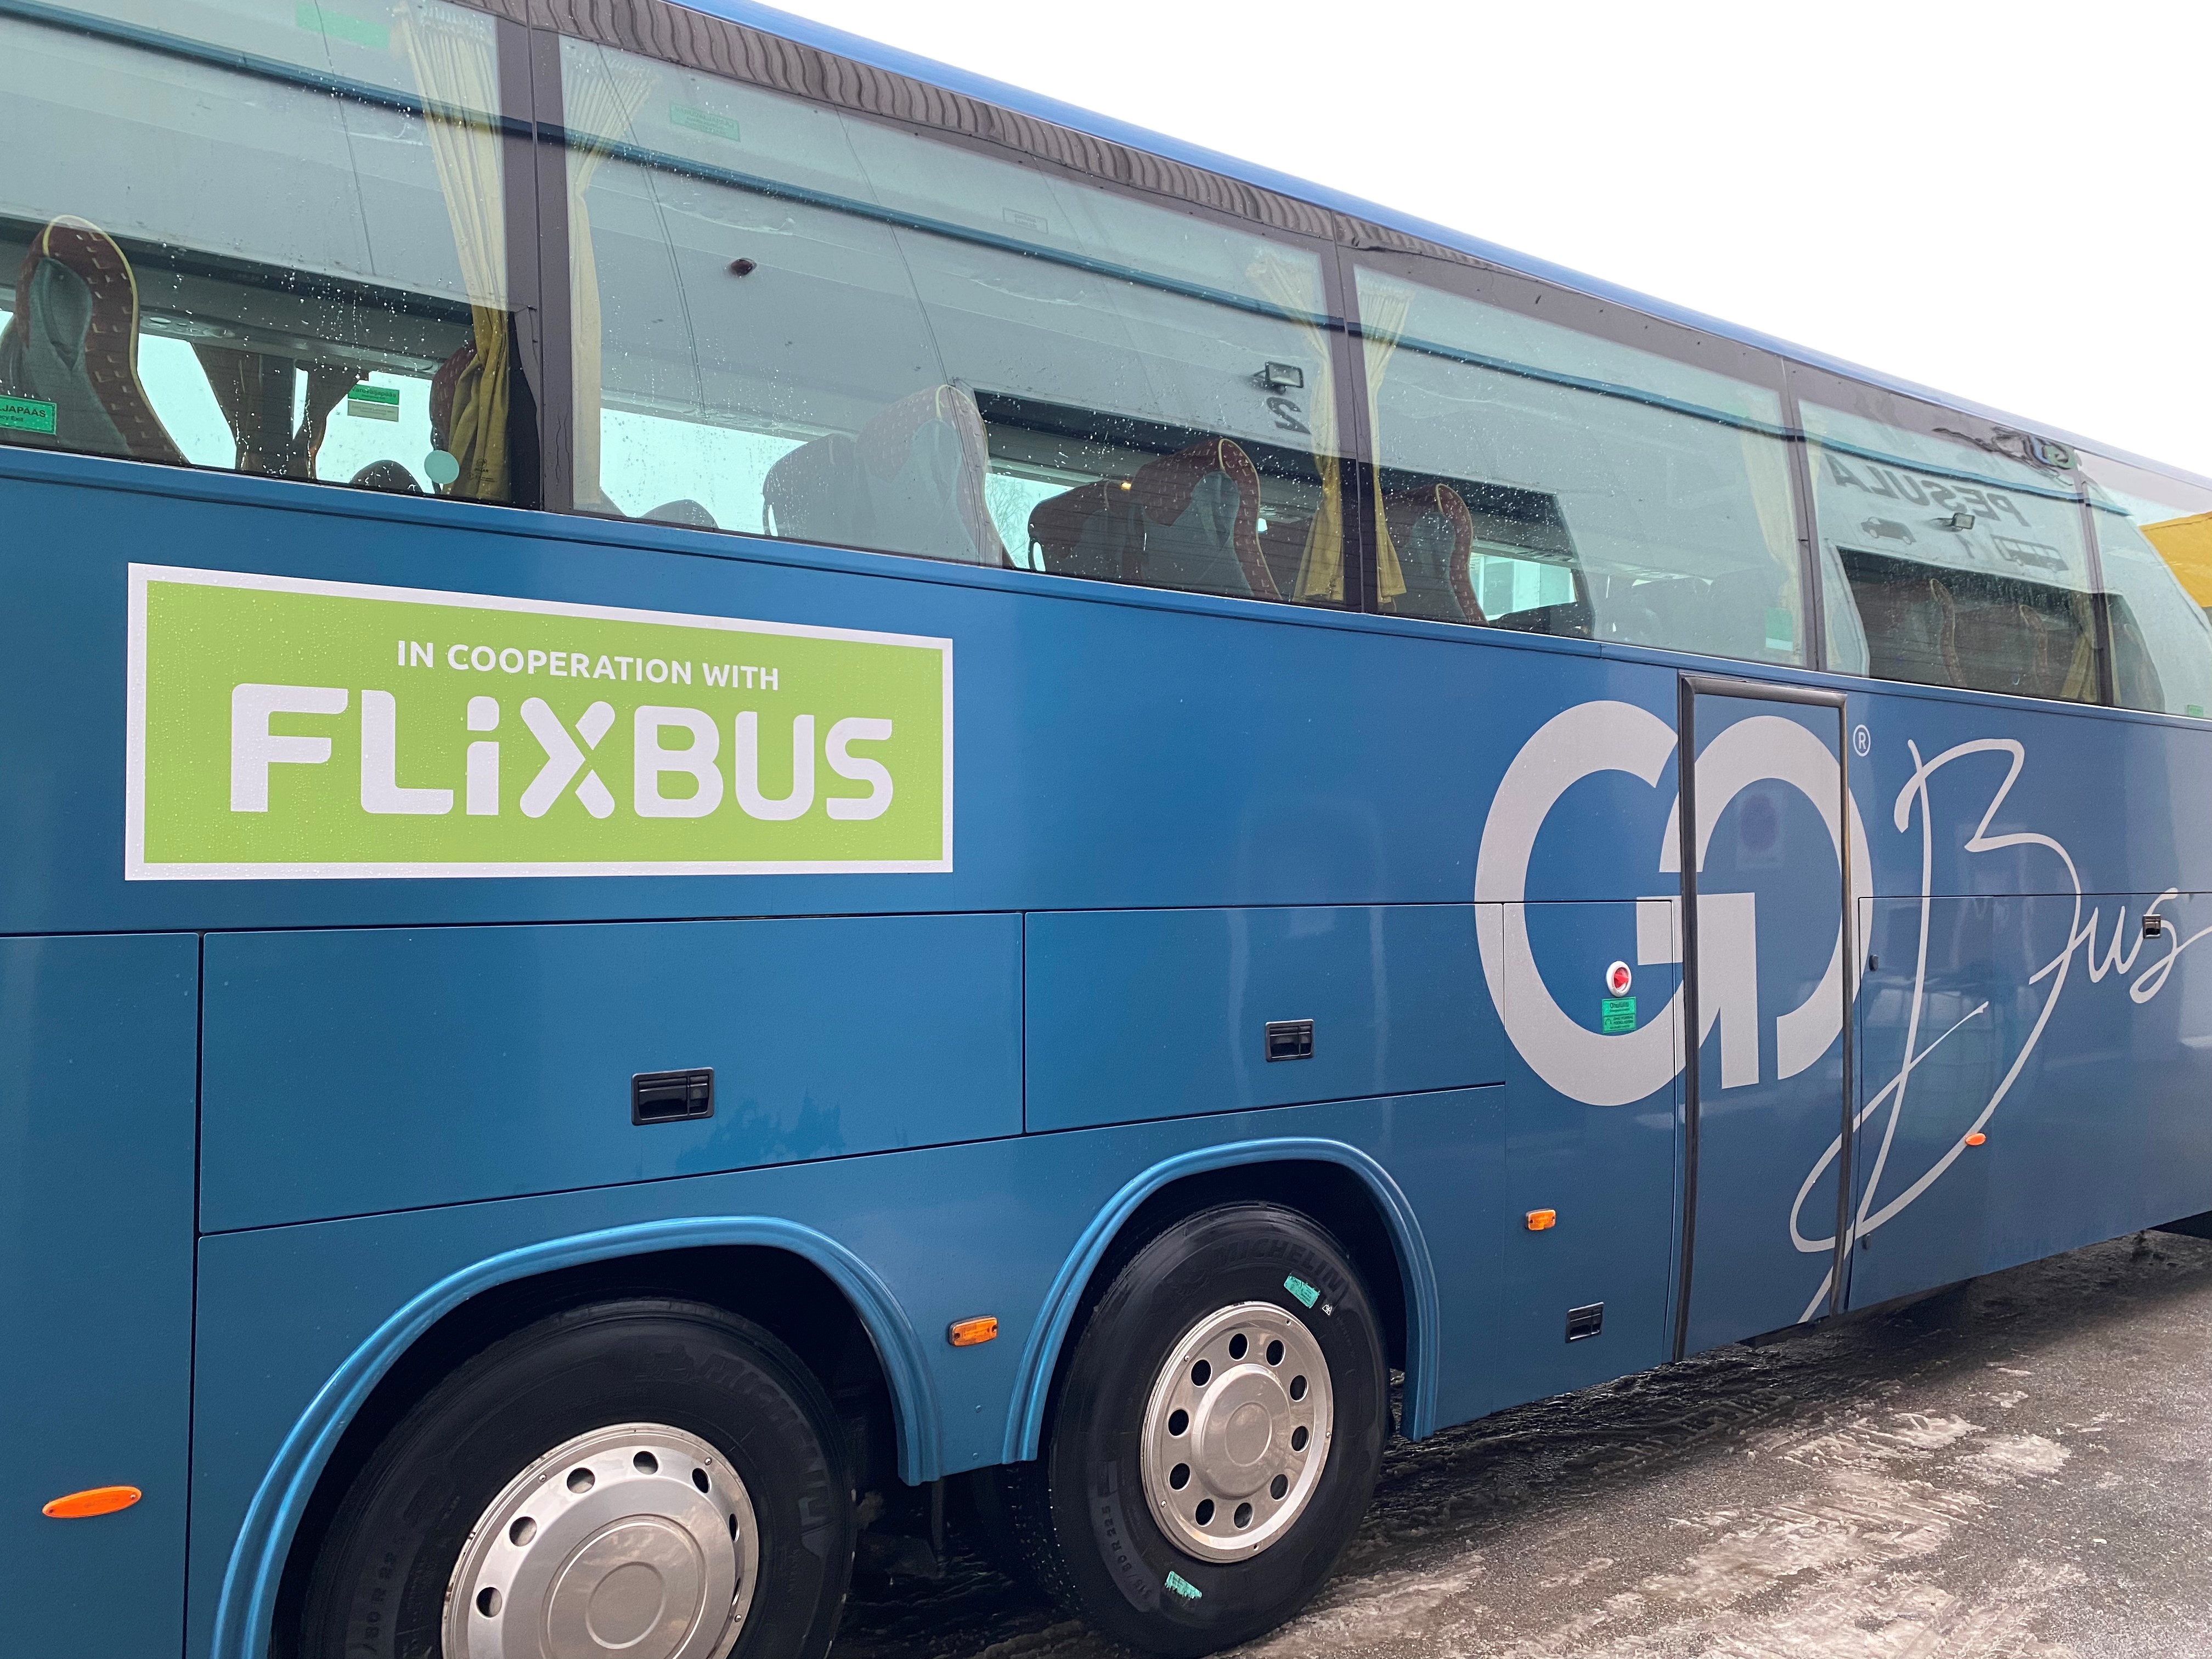 Euroopa suurlinnu ühendav FlixBus ja Eesti üks suurimaid bussiettevõteid Go Bus sõlmisid koostöölepingu, tänu millele saavad reisijad edaspidi osta FlixBusi pla